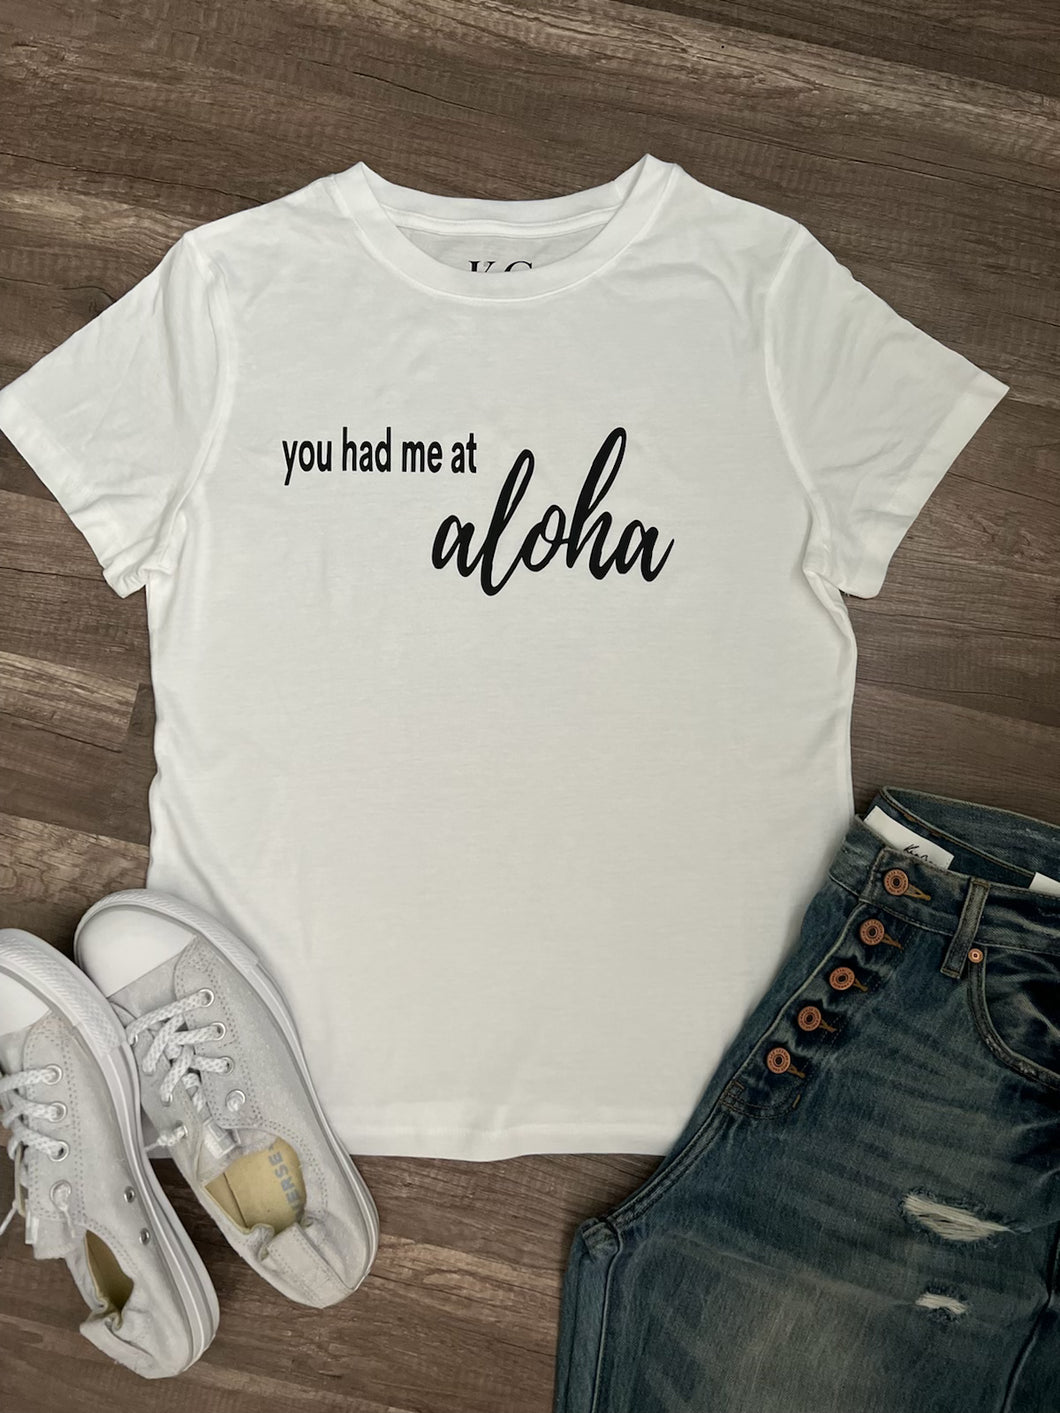 You had me at Aloha T-shirt